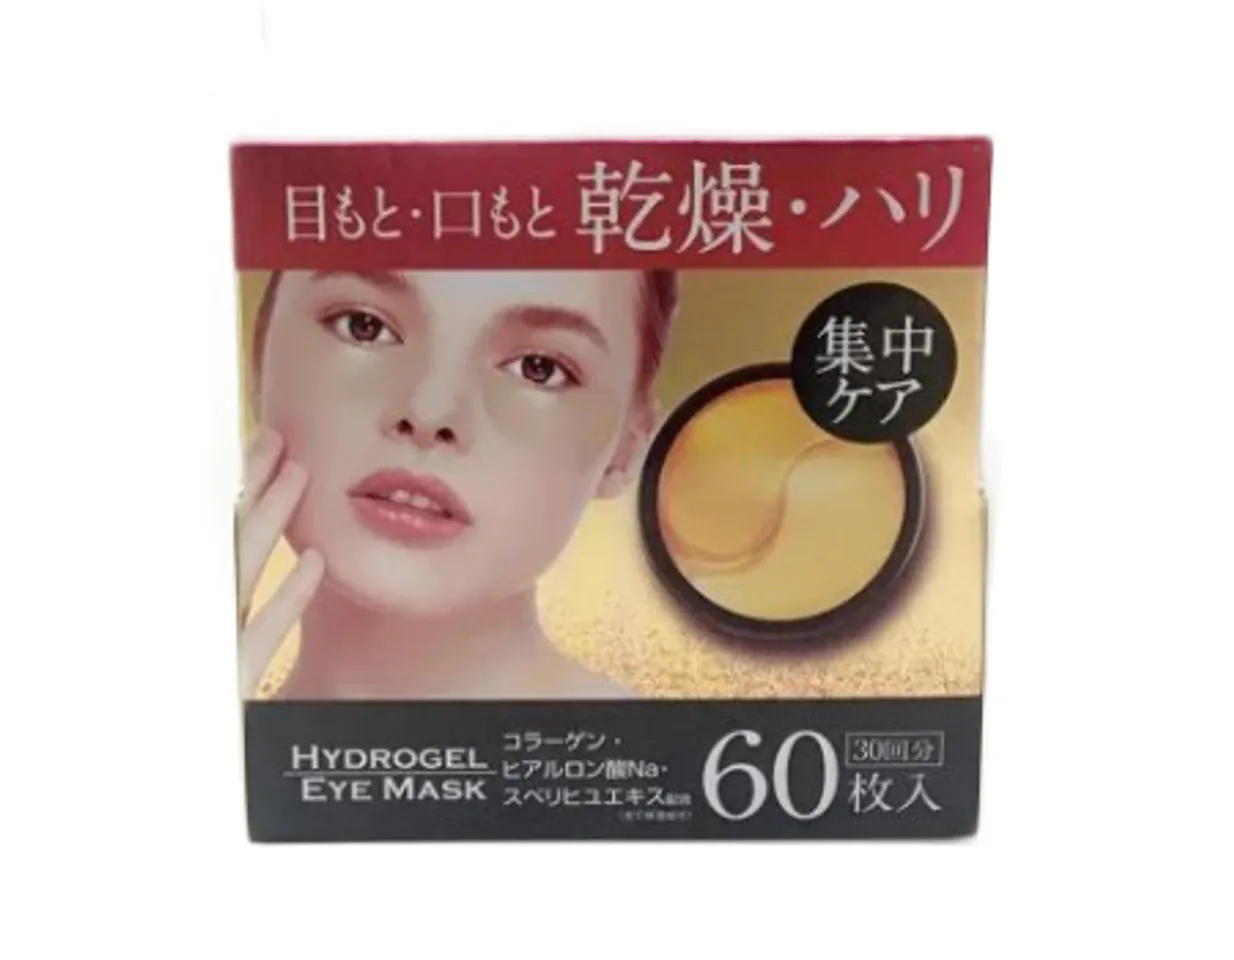 Mặt Nạ Mắt Hada Hydrogel Eye Nhật Bản 60 miếng